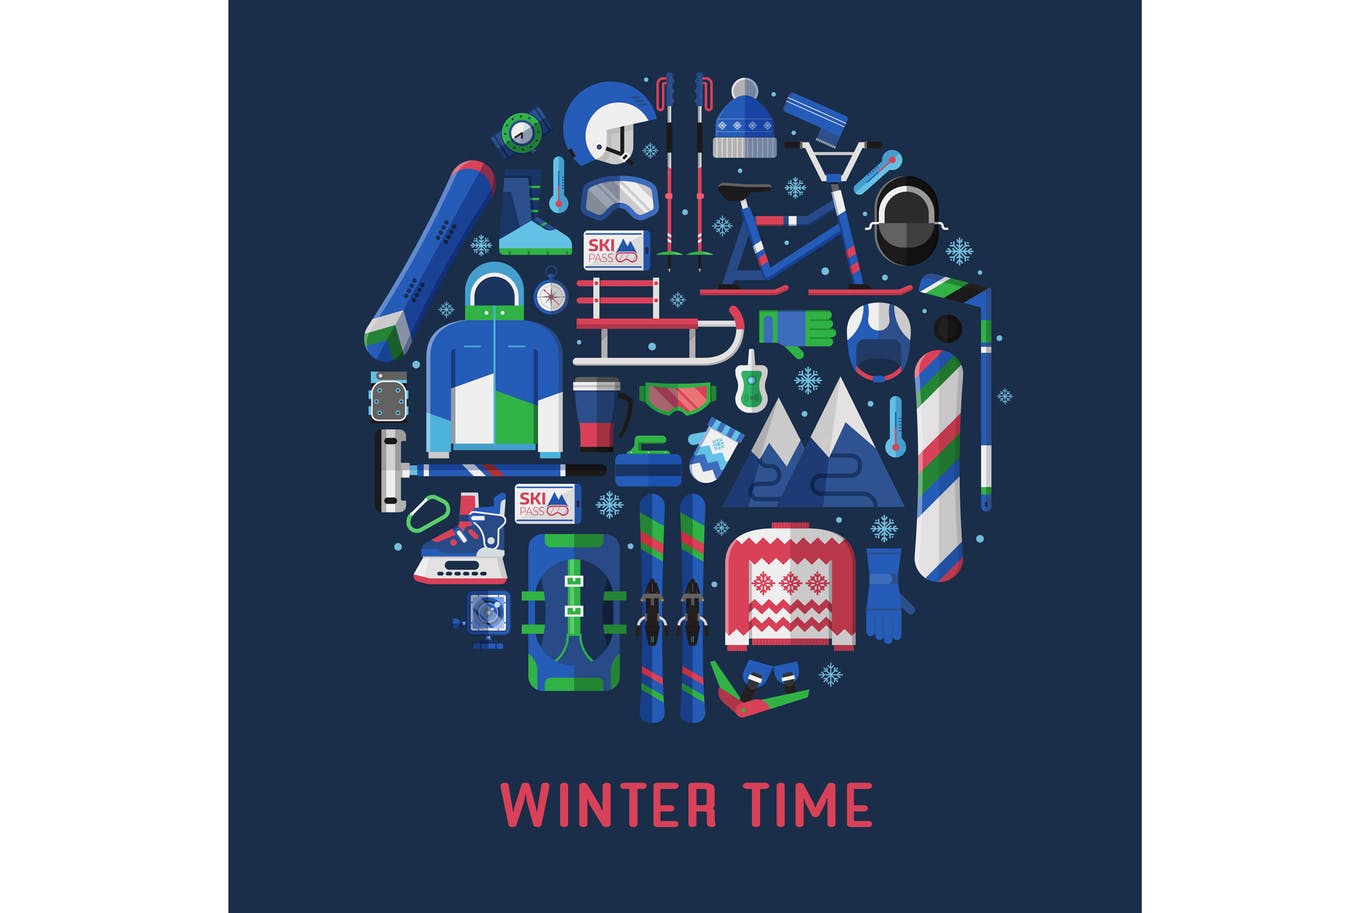 冬季运动主题扁平设计风格圆形矢量插画素材中国精选 Winter Time Card with Circle Print插图